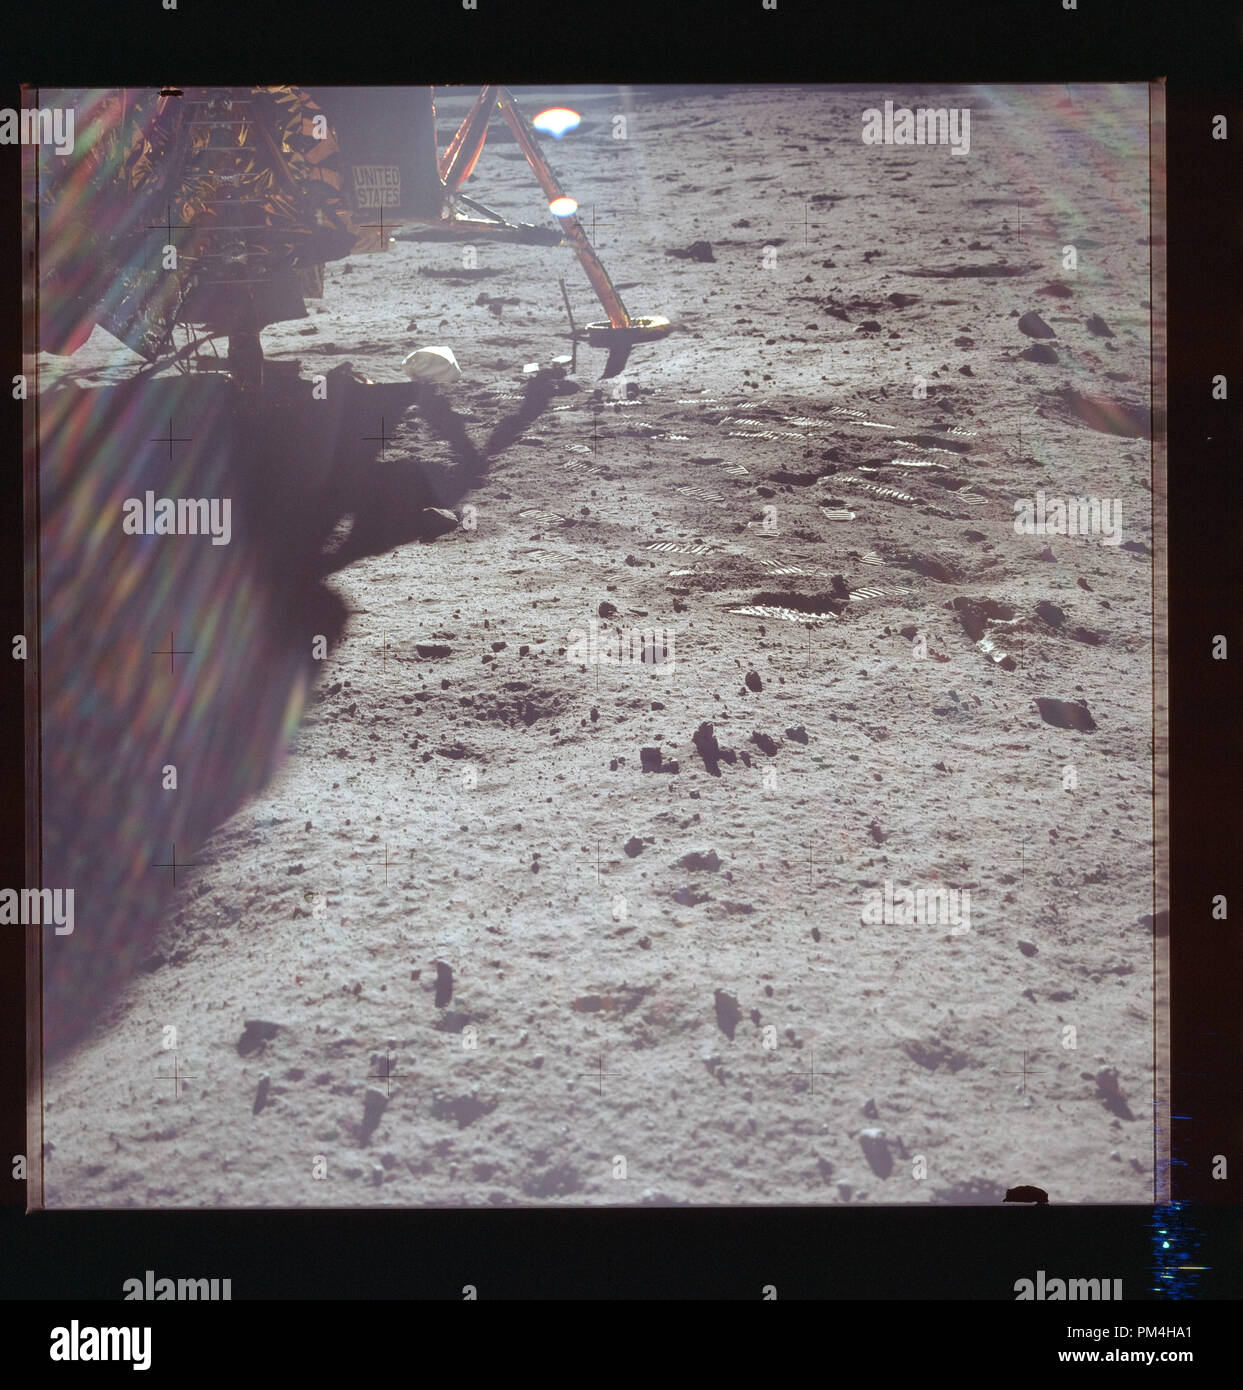 Die mondlandung Modul auf dem Mond im Juli 20, 1969 die Geschichte der Reise zum Mond. Datei Referenz Nr. 1003 265 THA Stockfoto